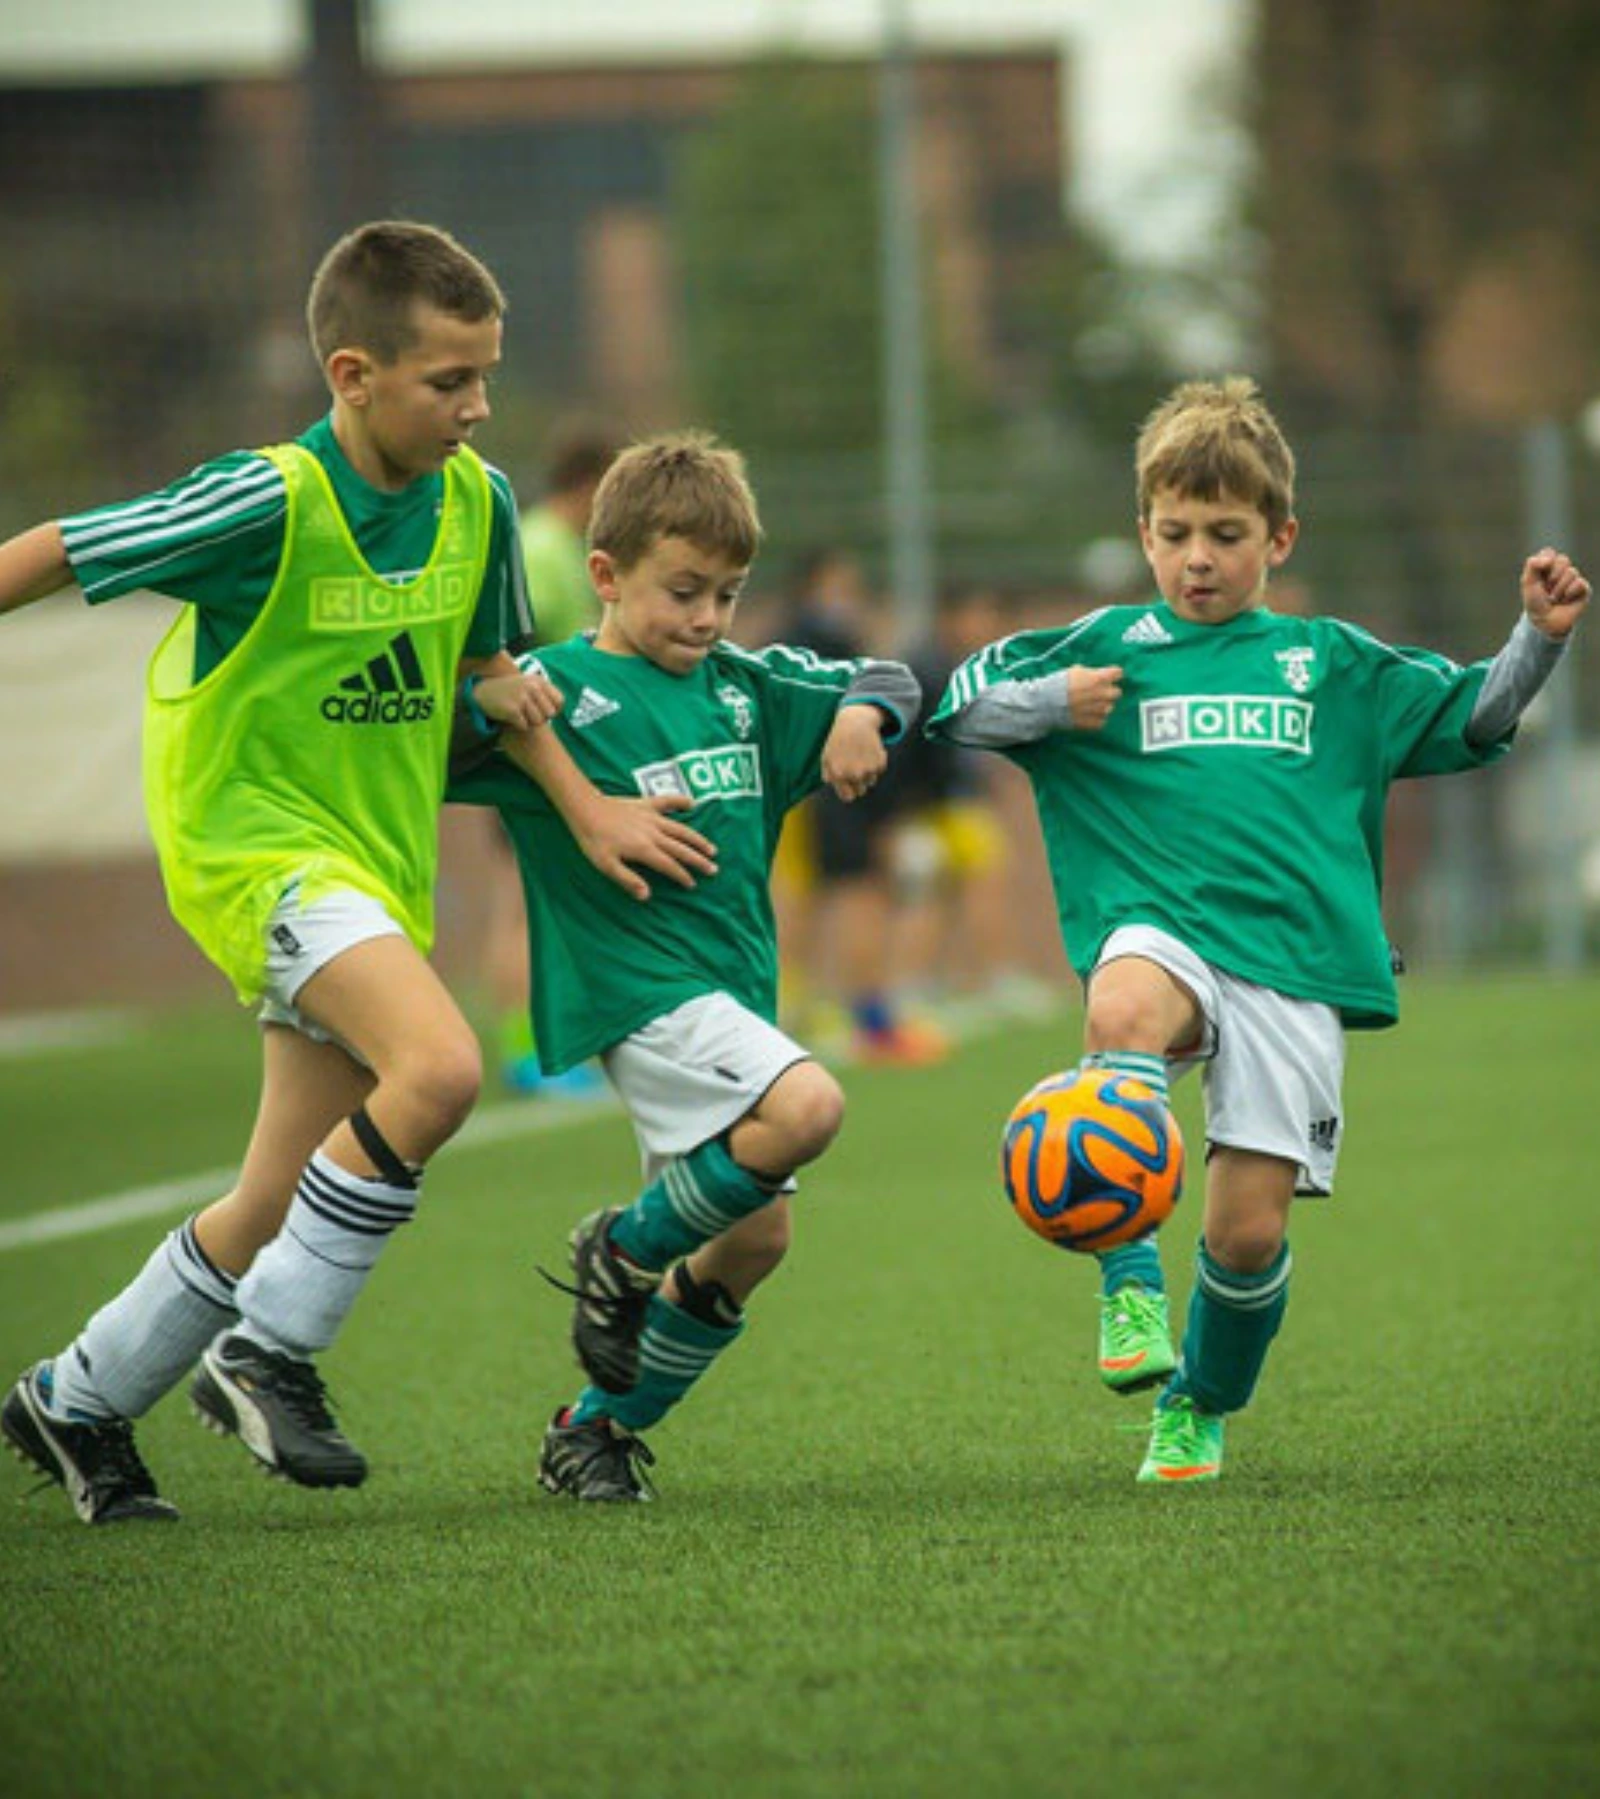 Foto van drie jeugdspelers op voetbal scouting event van Voetbal Totaal.